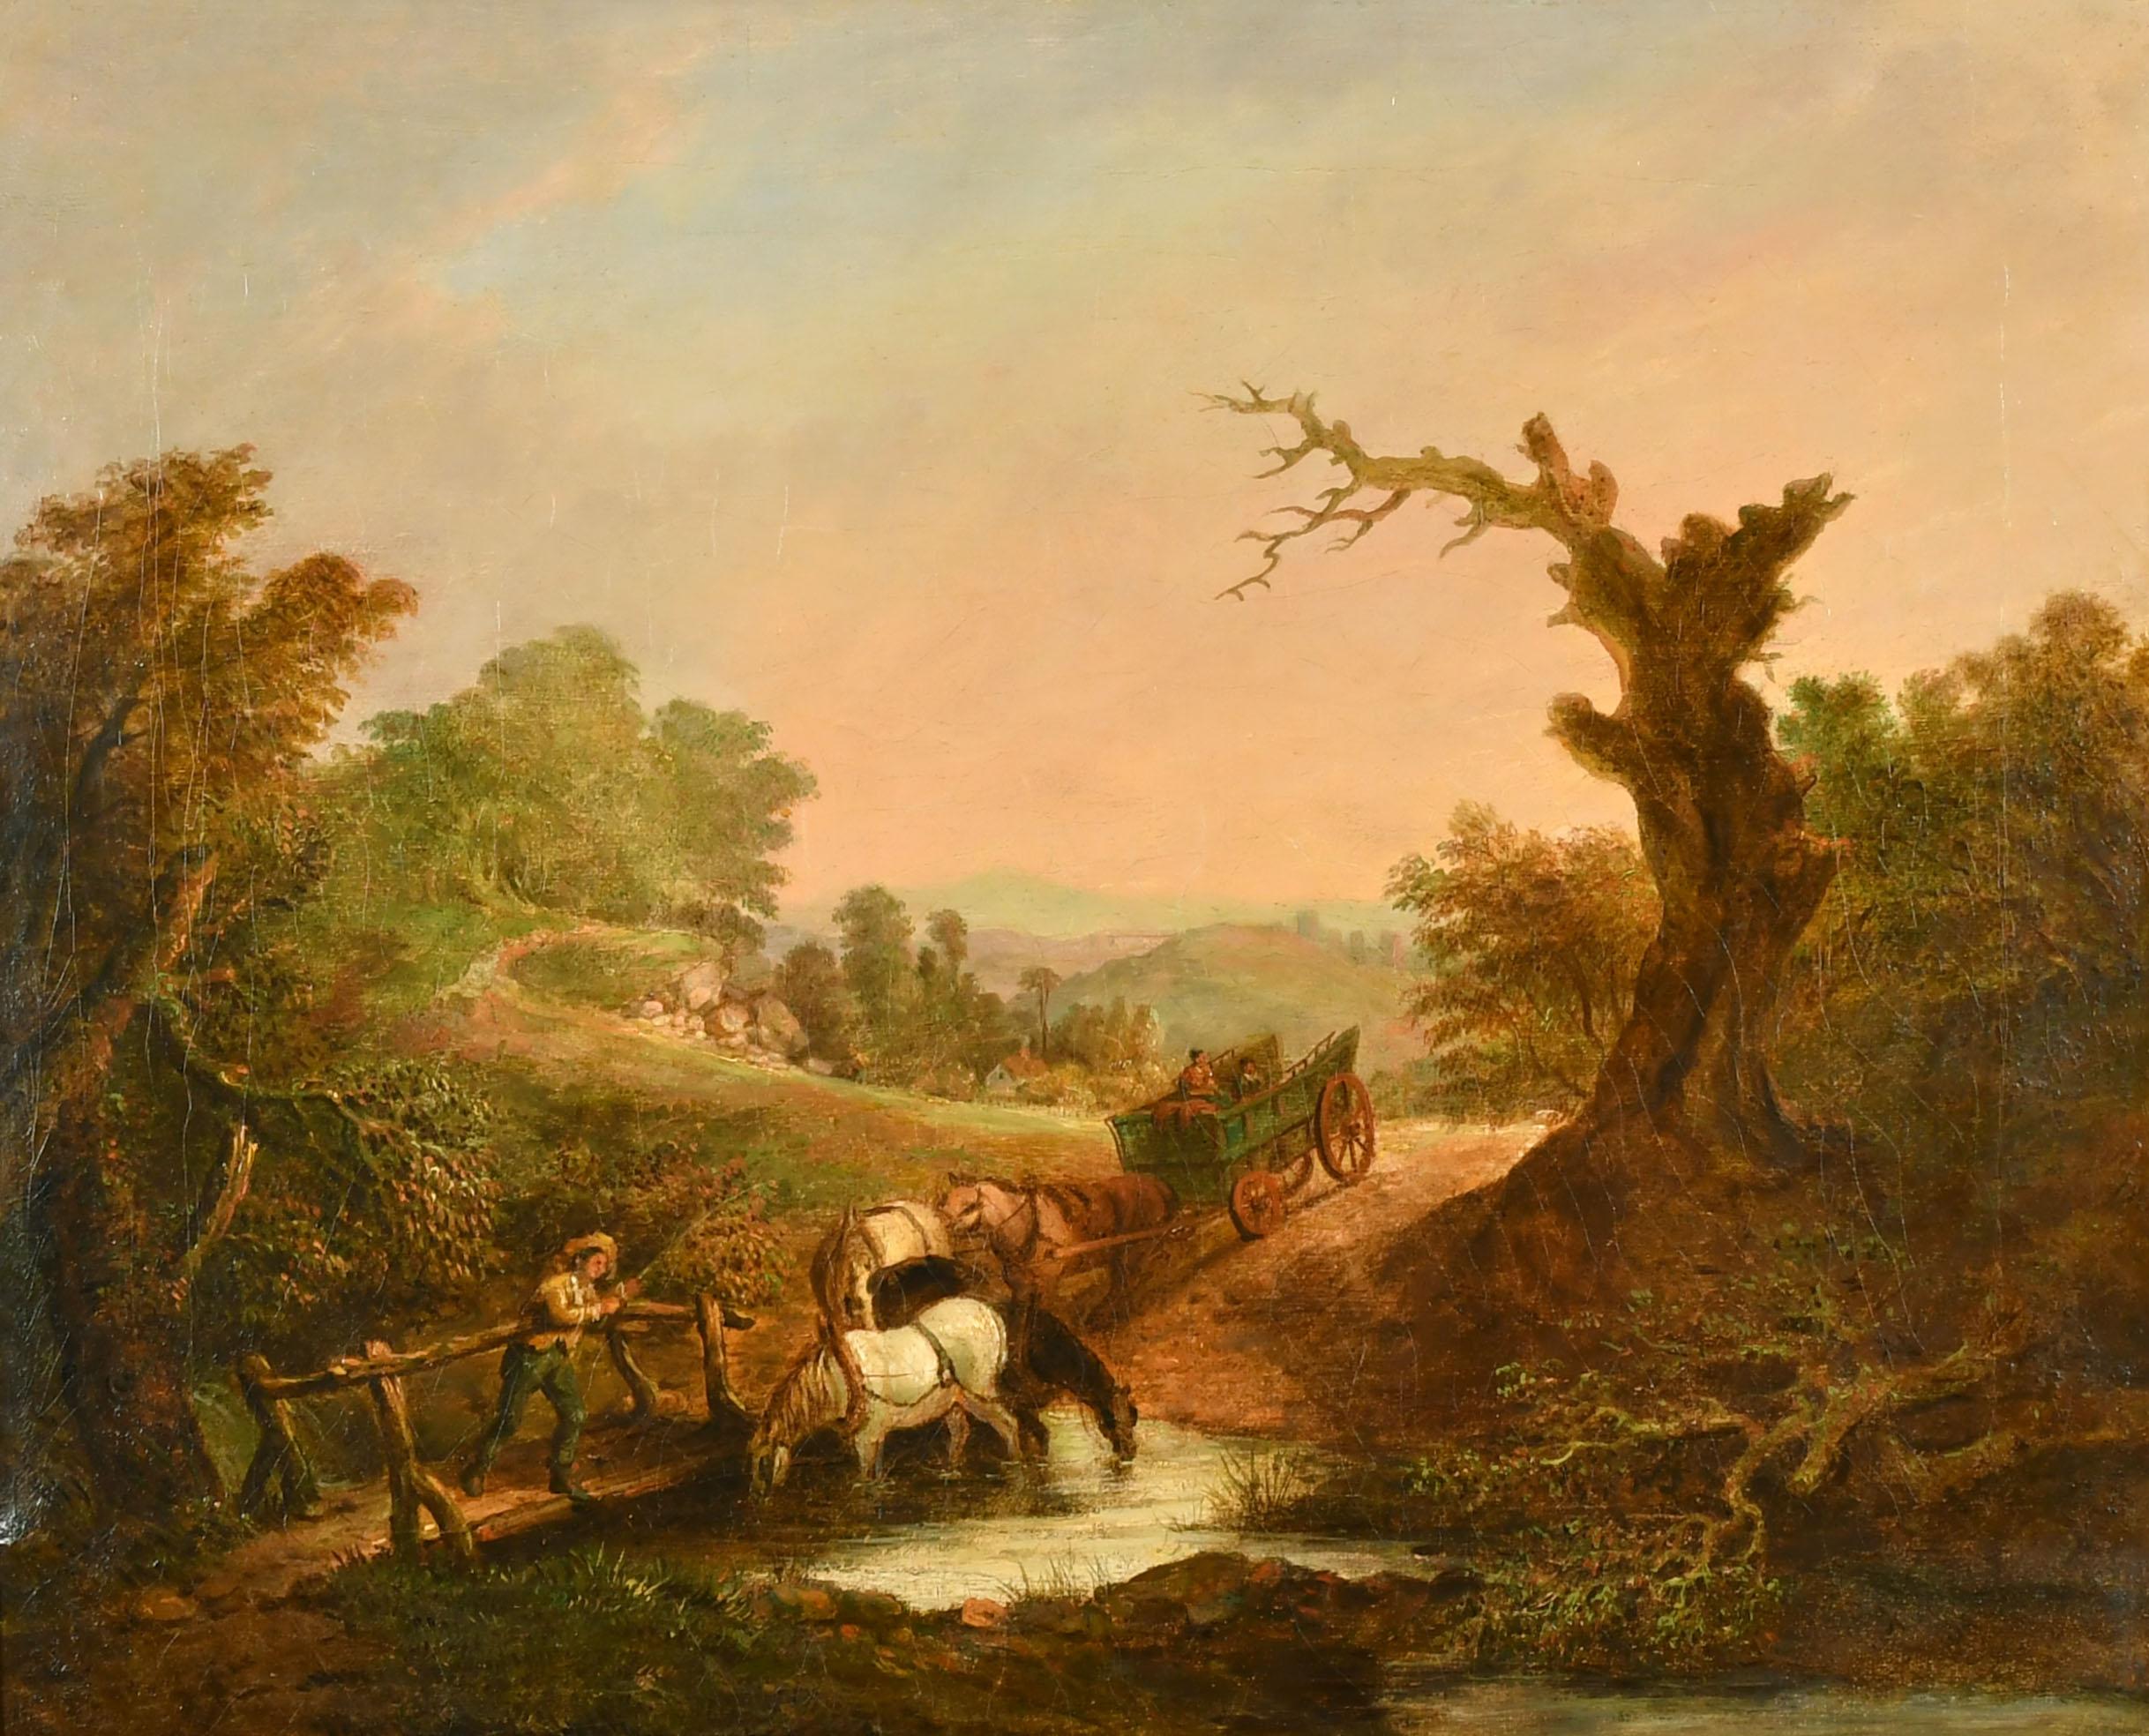 Frühes englisches romantisches Ölgemälde Bauern mit Pferd undwagen beim Überqueren des Flusses – Painting von 1800’s British Oil